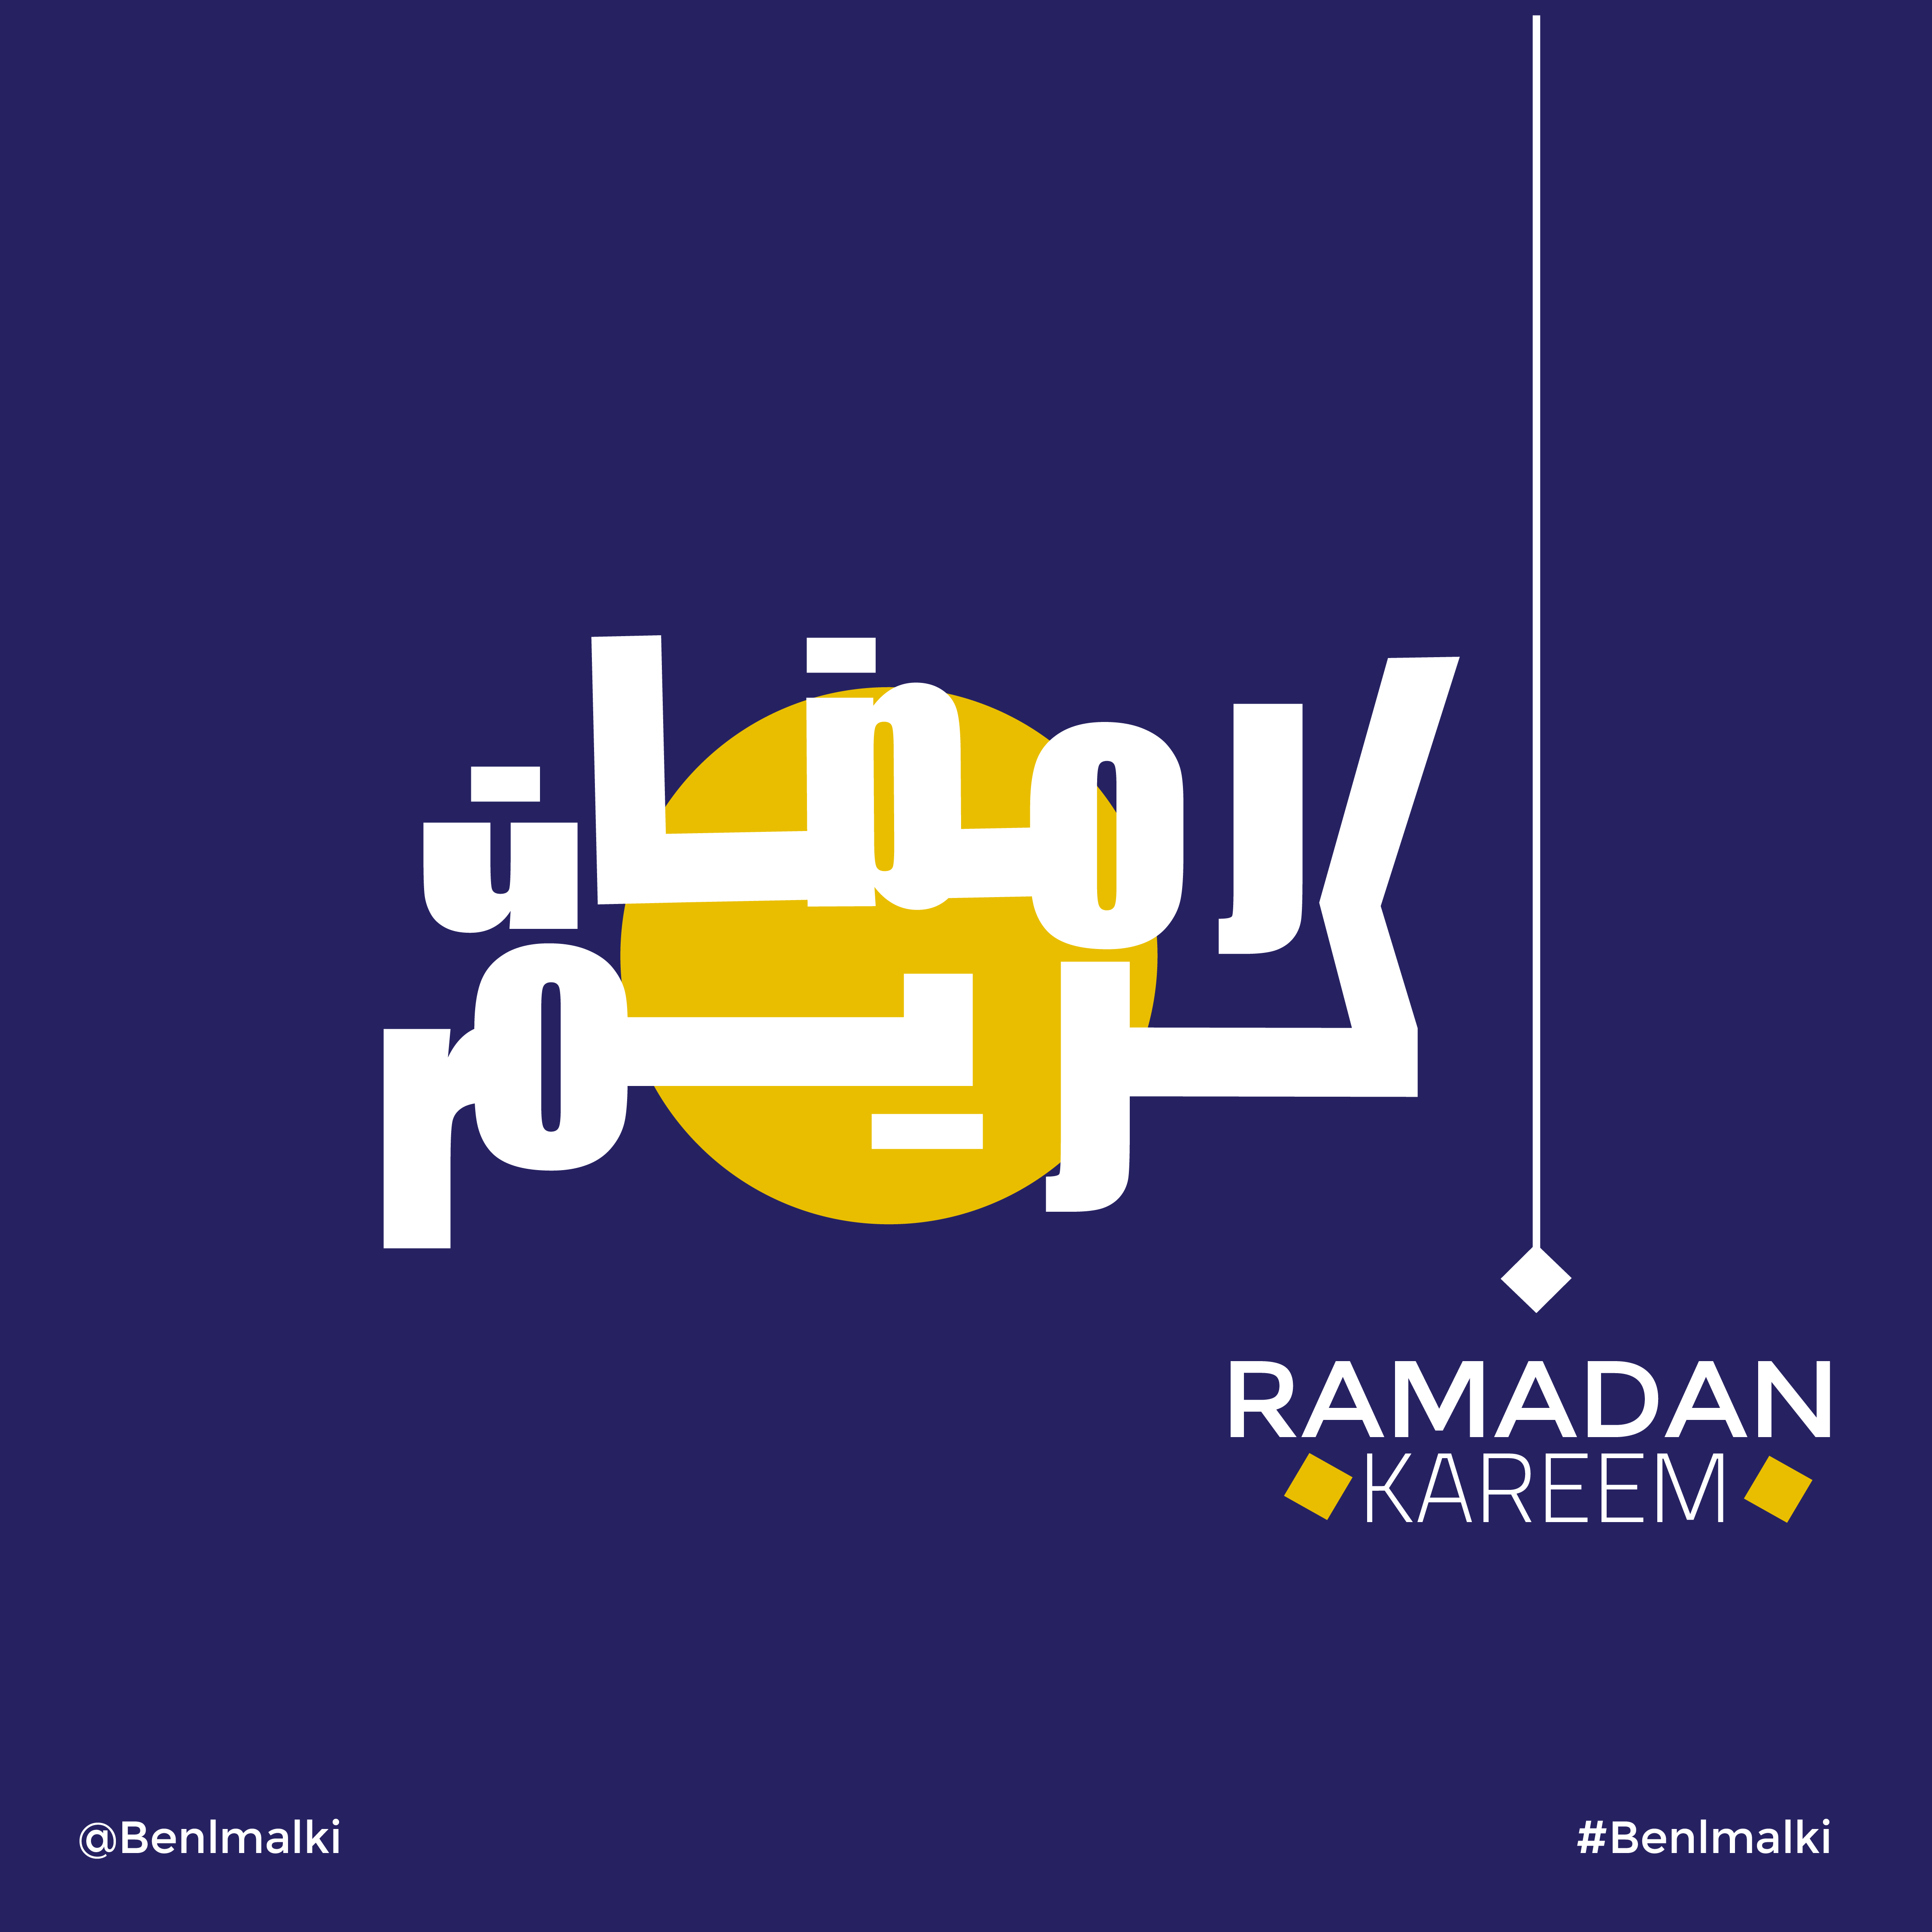 مخطوطة رمضان كريم  من تصميمي الخاص و